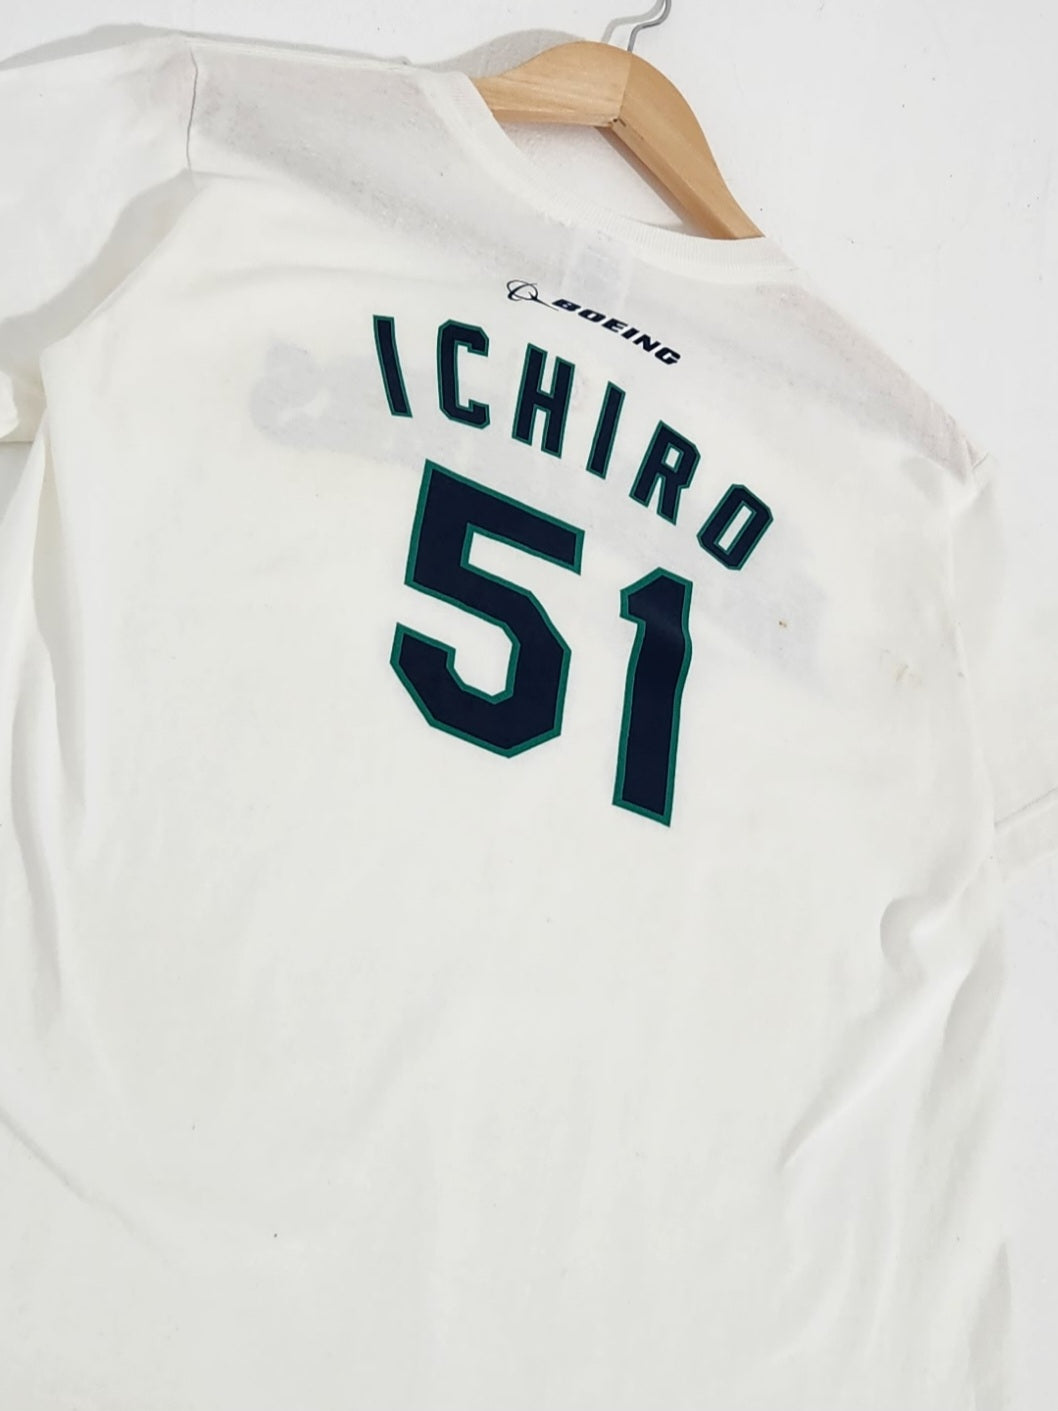 Ichiro Suzuki T-Shirts for Sale